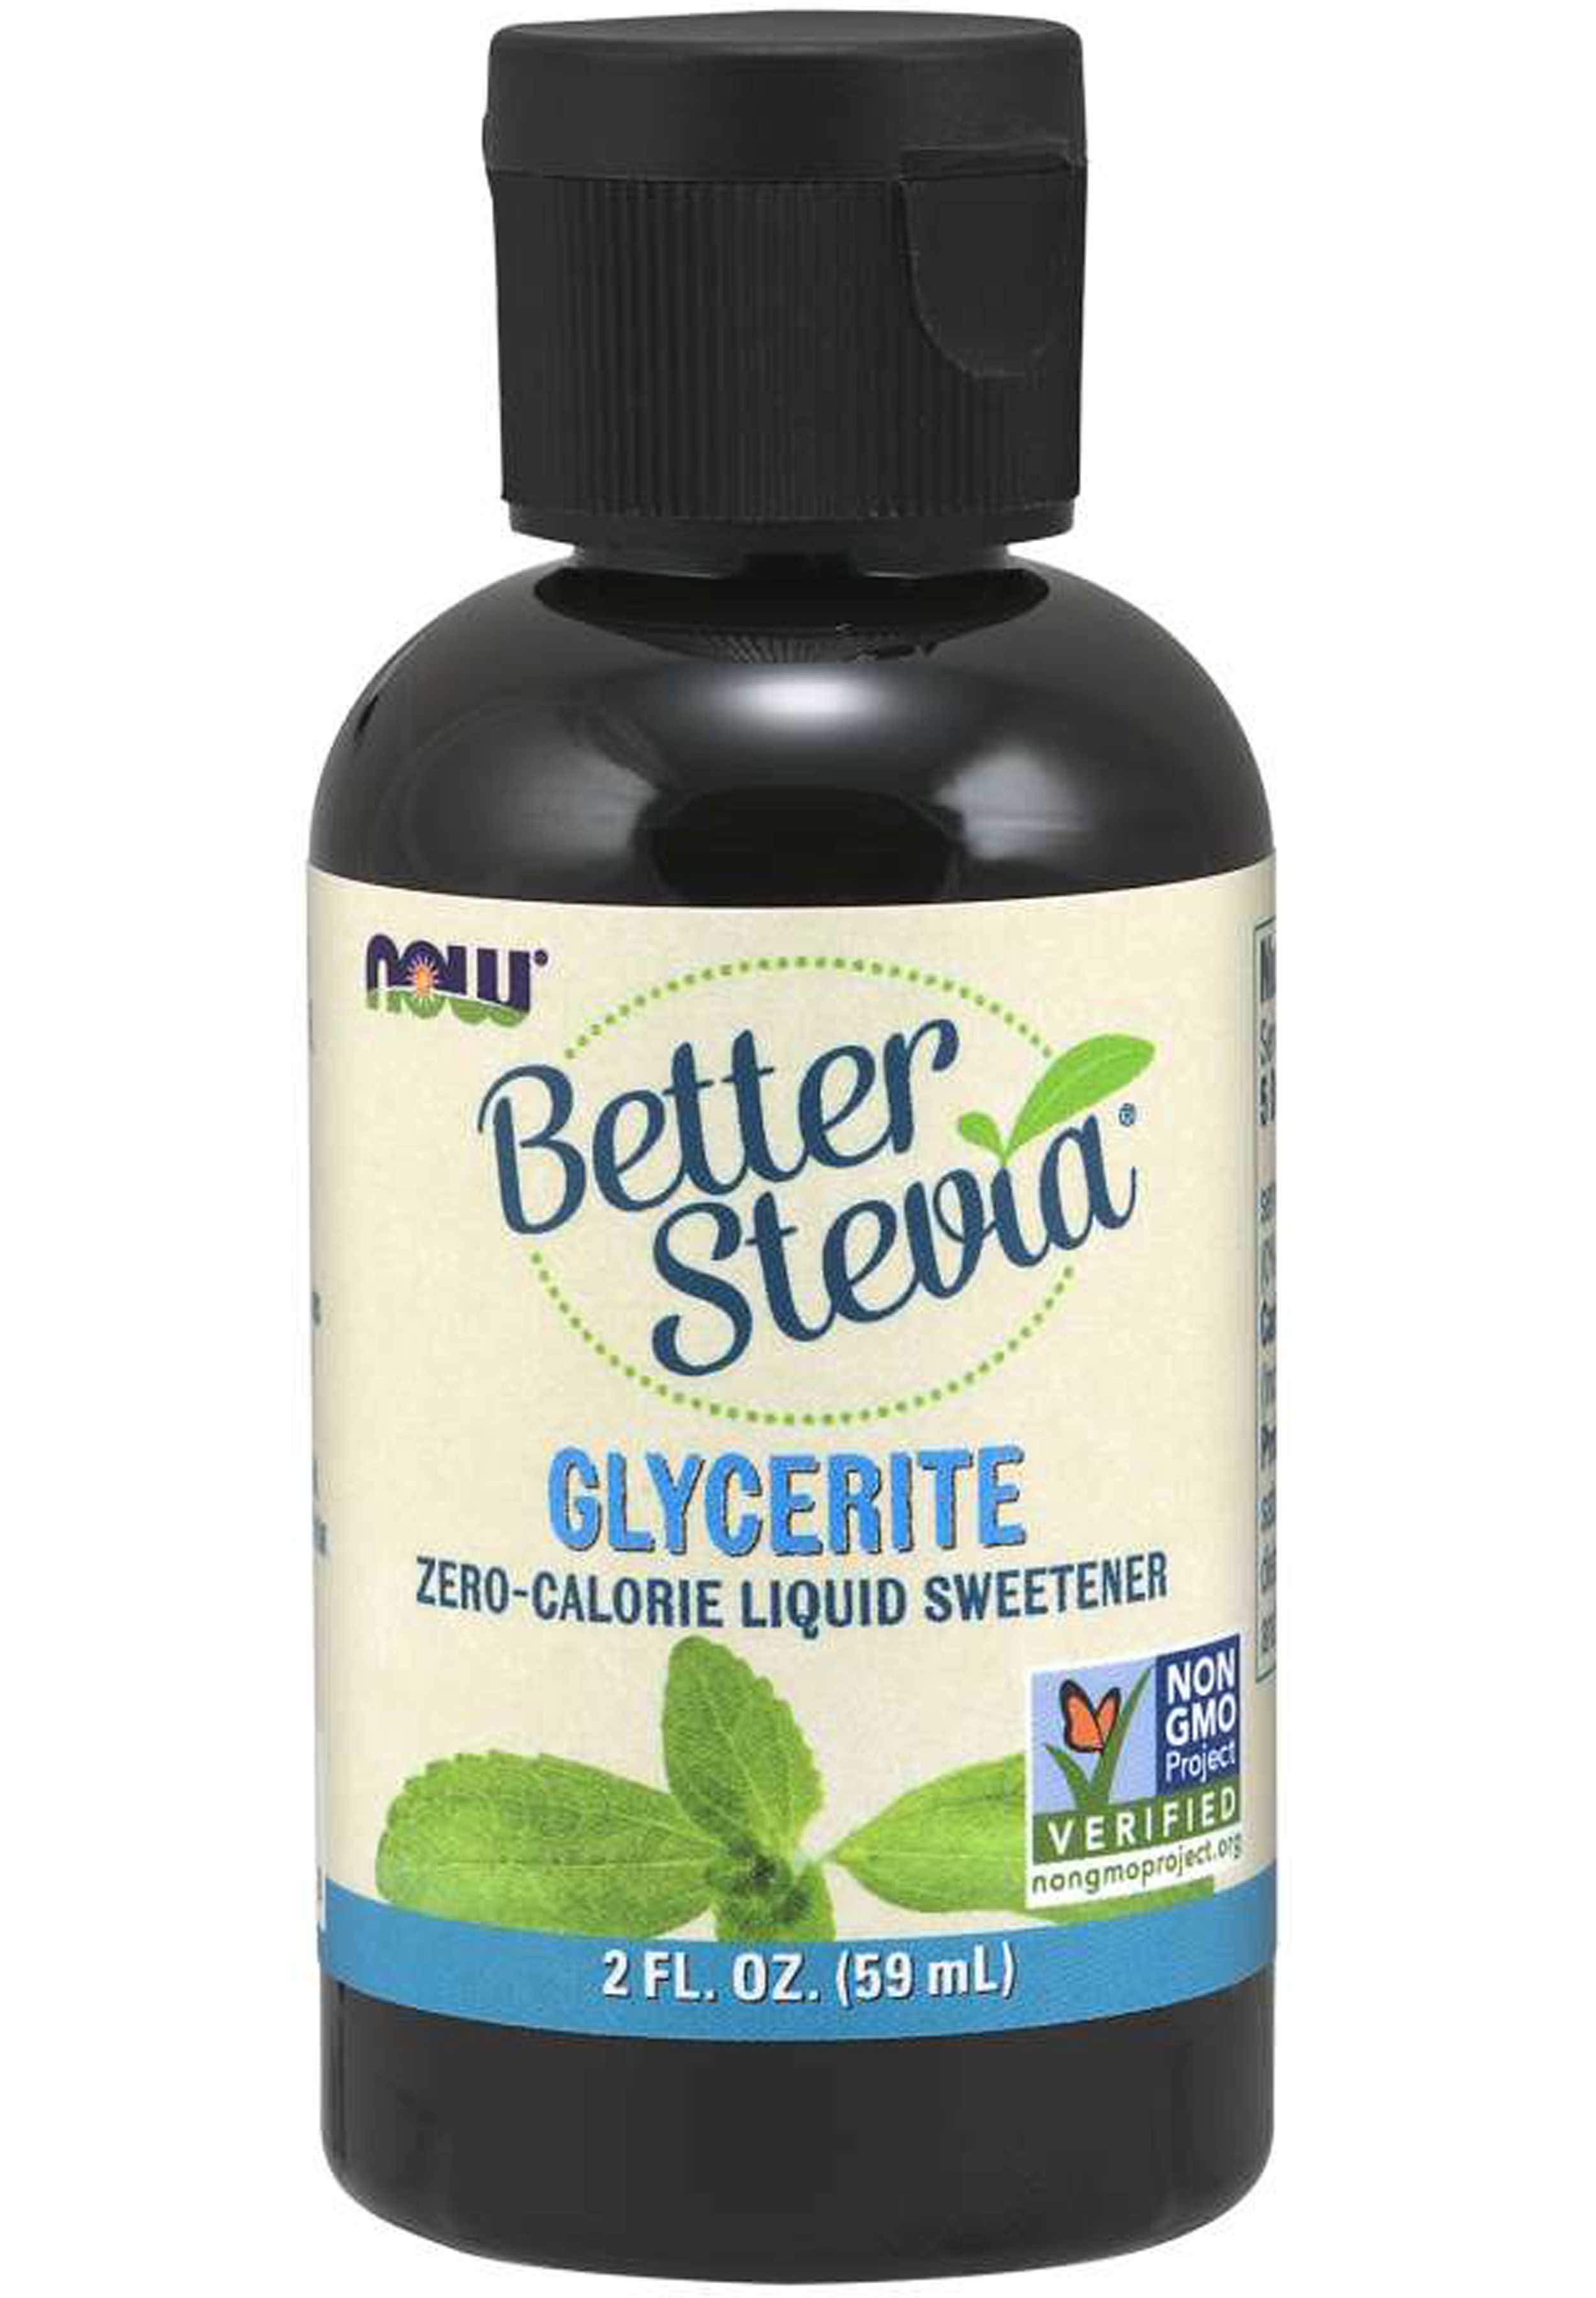 NOW Better Stevia, Glycerite